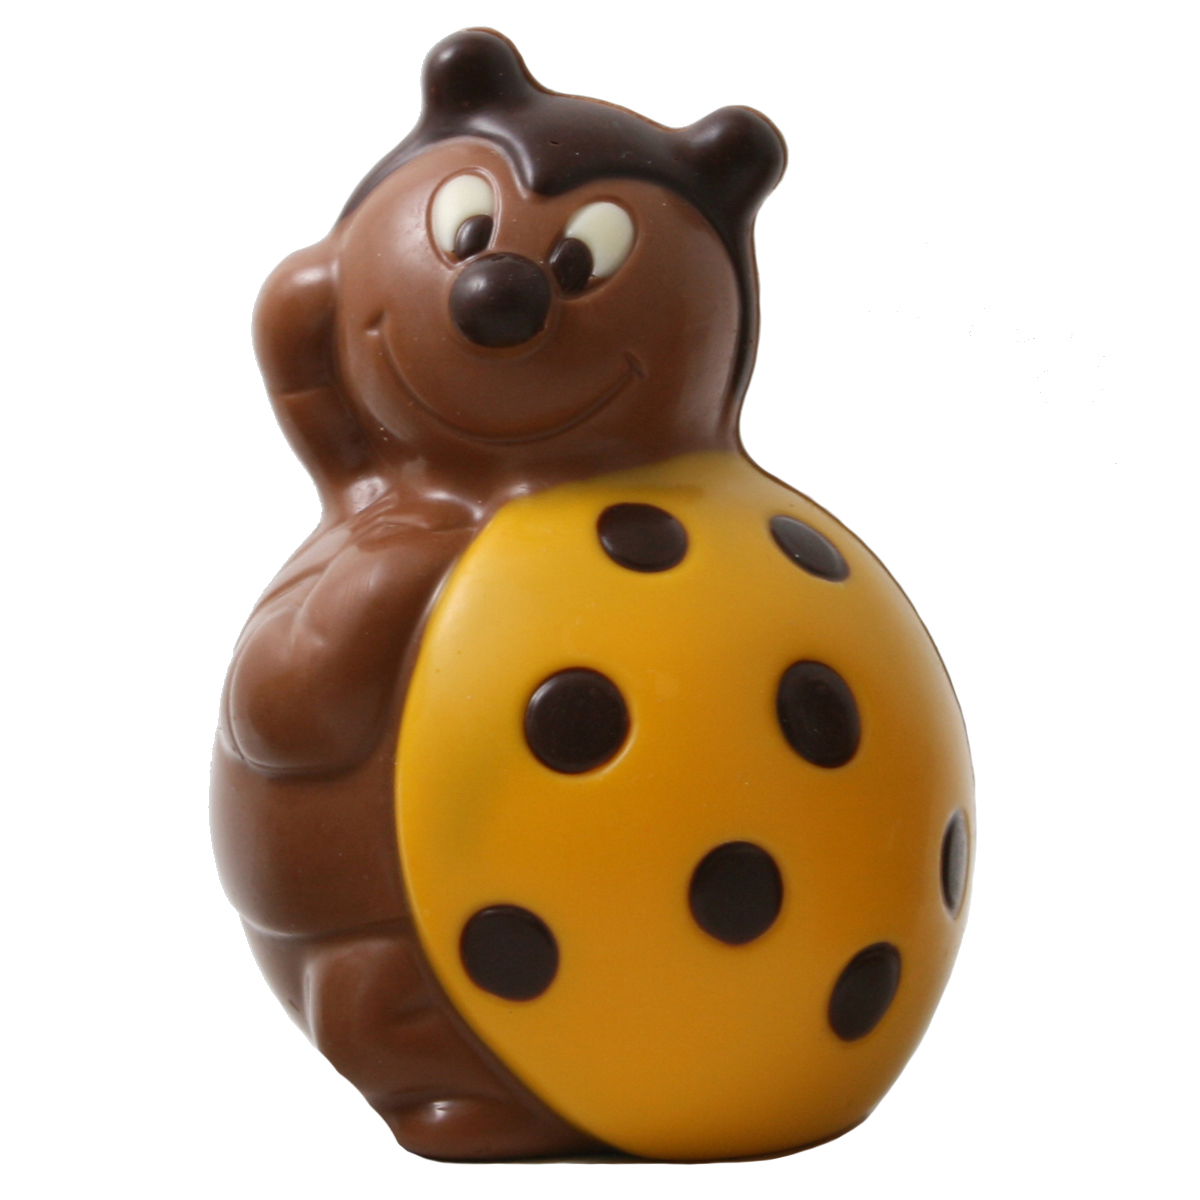 sinterklaaspakketten in chocolade collectie 2019